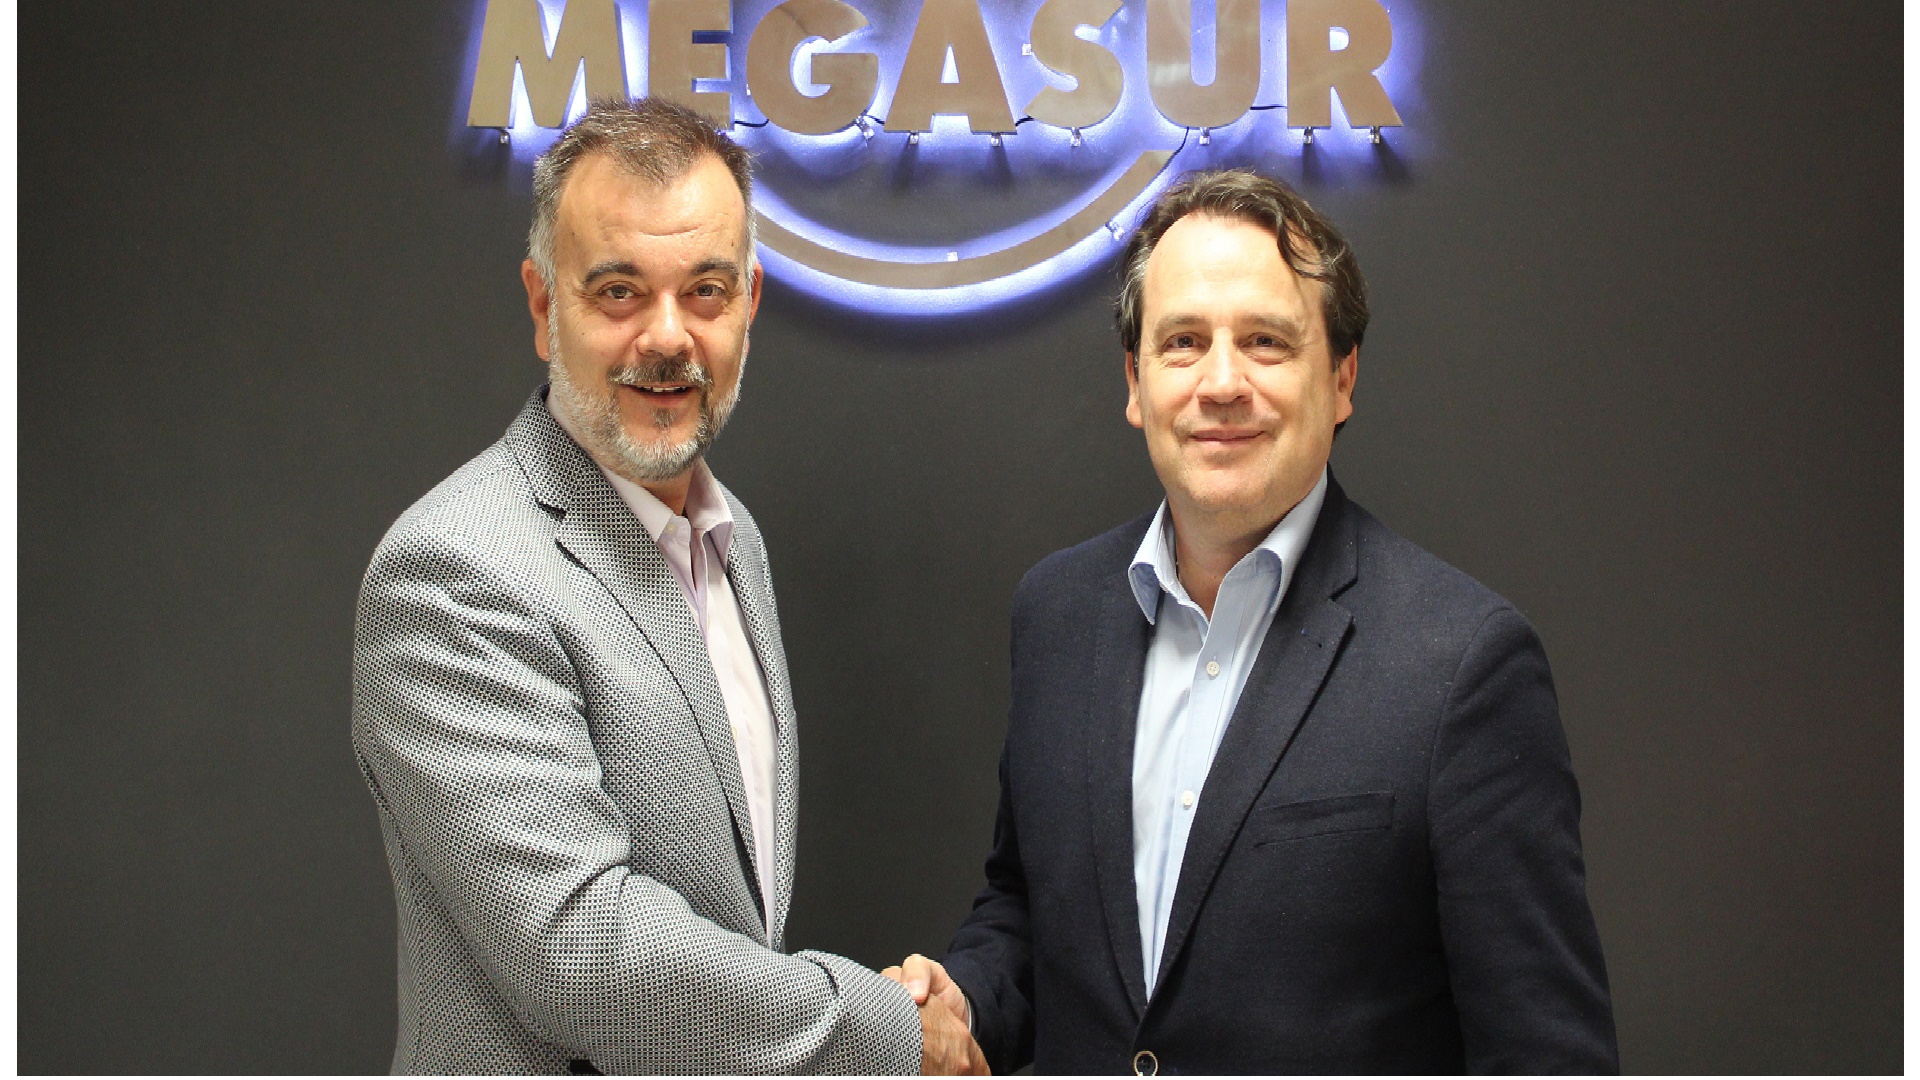 Federico Izquierdo Gerente de Megasur, y Emilio Dumas, Director General de Toshiba España